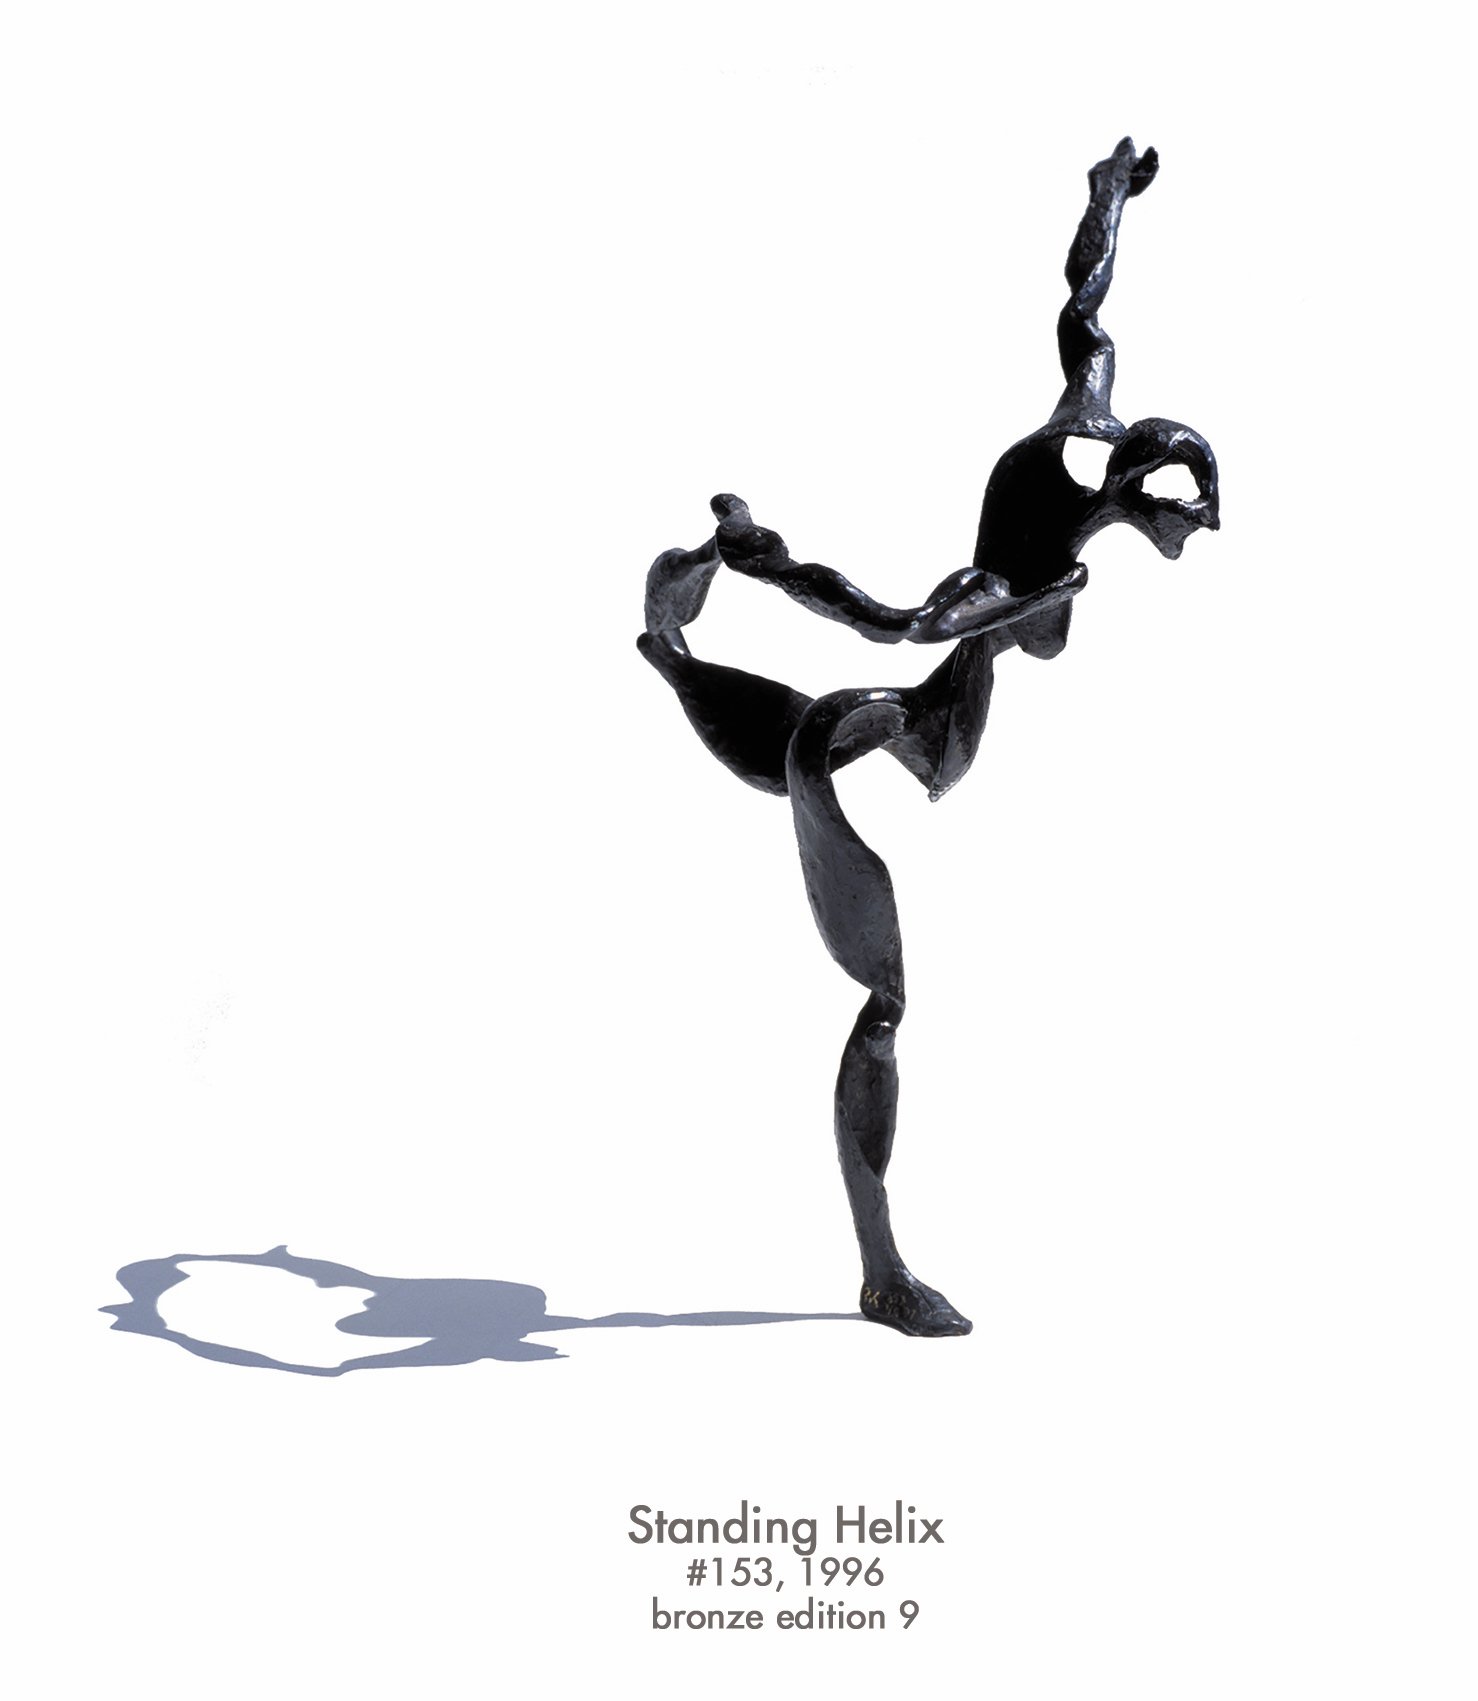 Standing Helix, 1996, bronze, #153